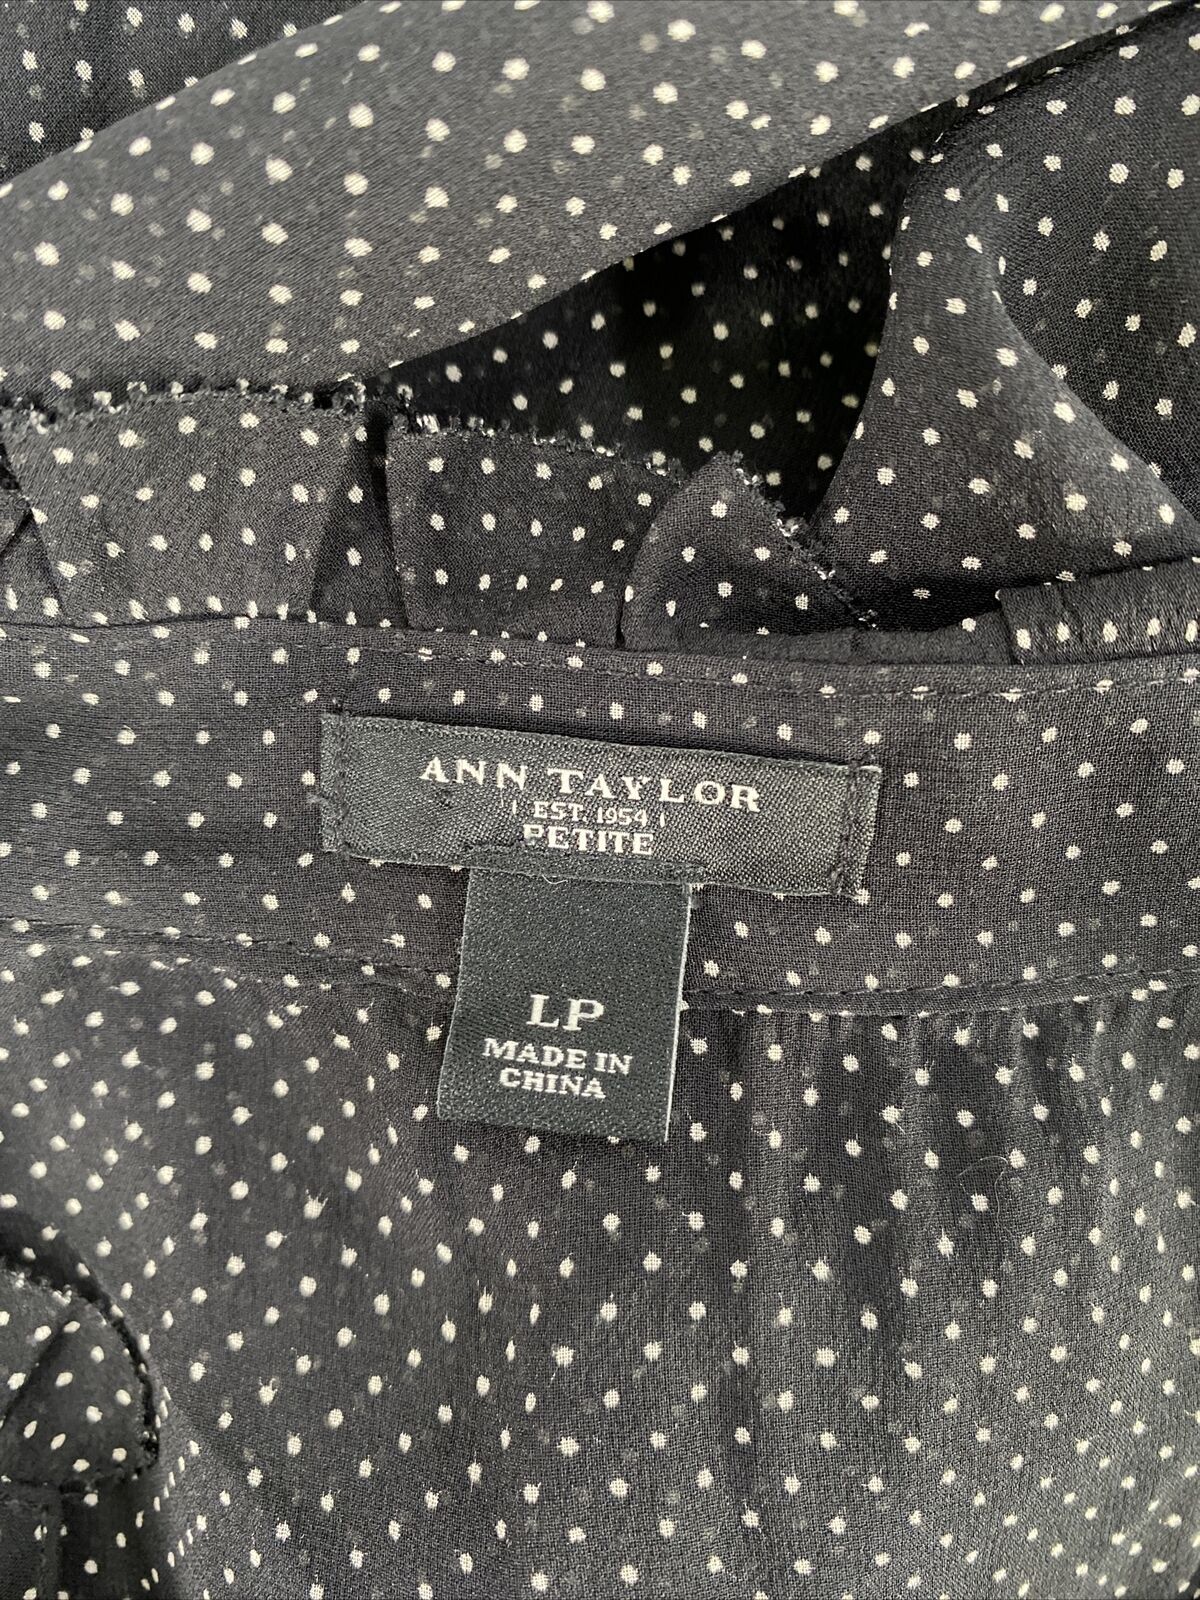 Ann Taylor Women's Black Polka Dot Sheer Button Up Blouse Top - Petite LP